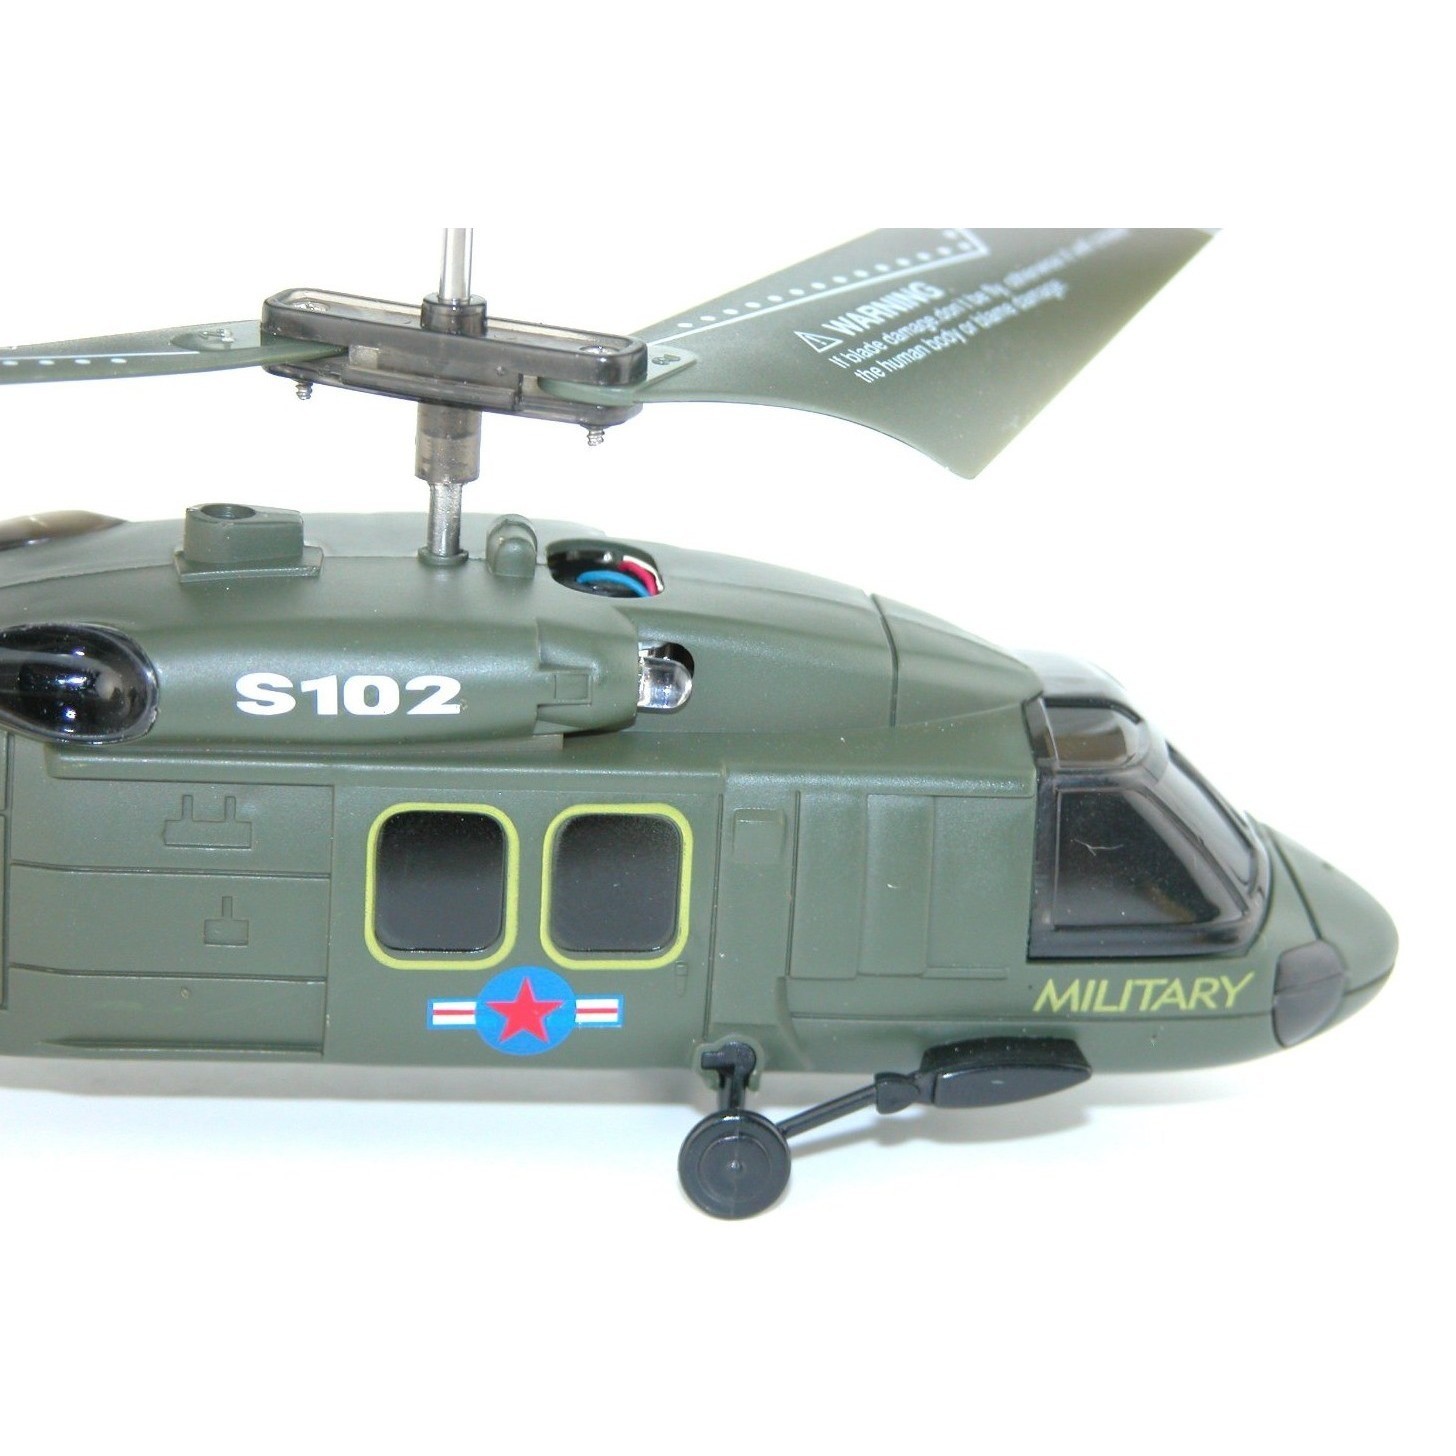 Большой вертолет на радиоуправлении. Вертолёт Syma s102g. Вертолет Syma Black Hawk uh-60 (s102g) 20 см. Вертолет Syma s109g зеленый. Радиоуправляемый вертолет Black Hawk.